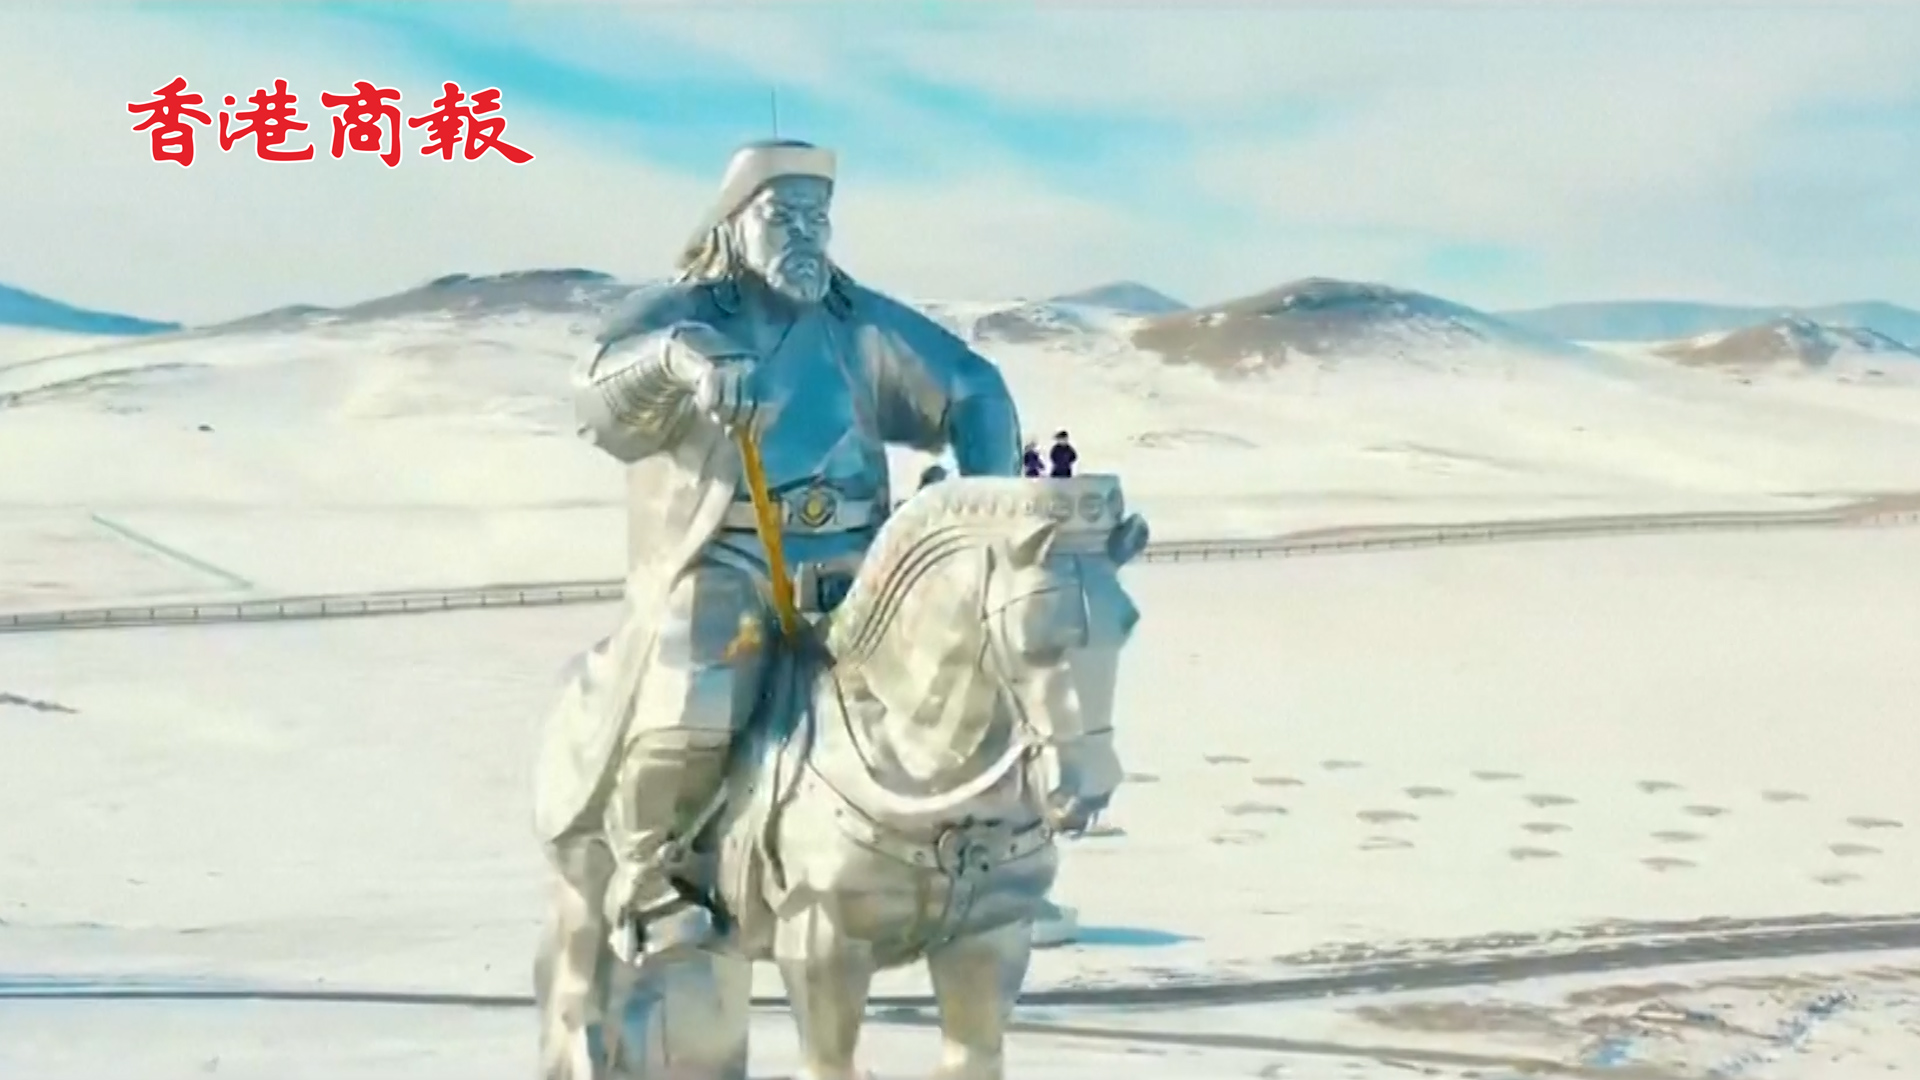 有片丨冬奧臨近 蒙古語版《一起向未來》在蒙古國掀起「奧運熱」